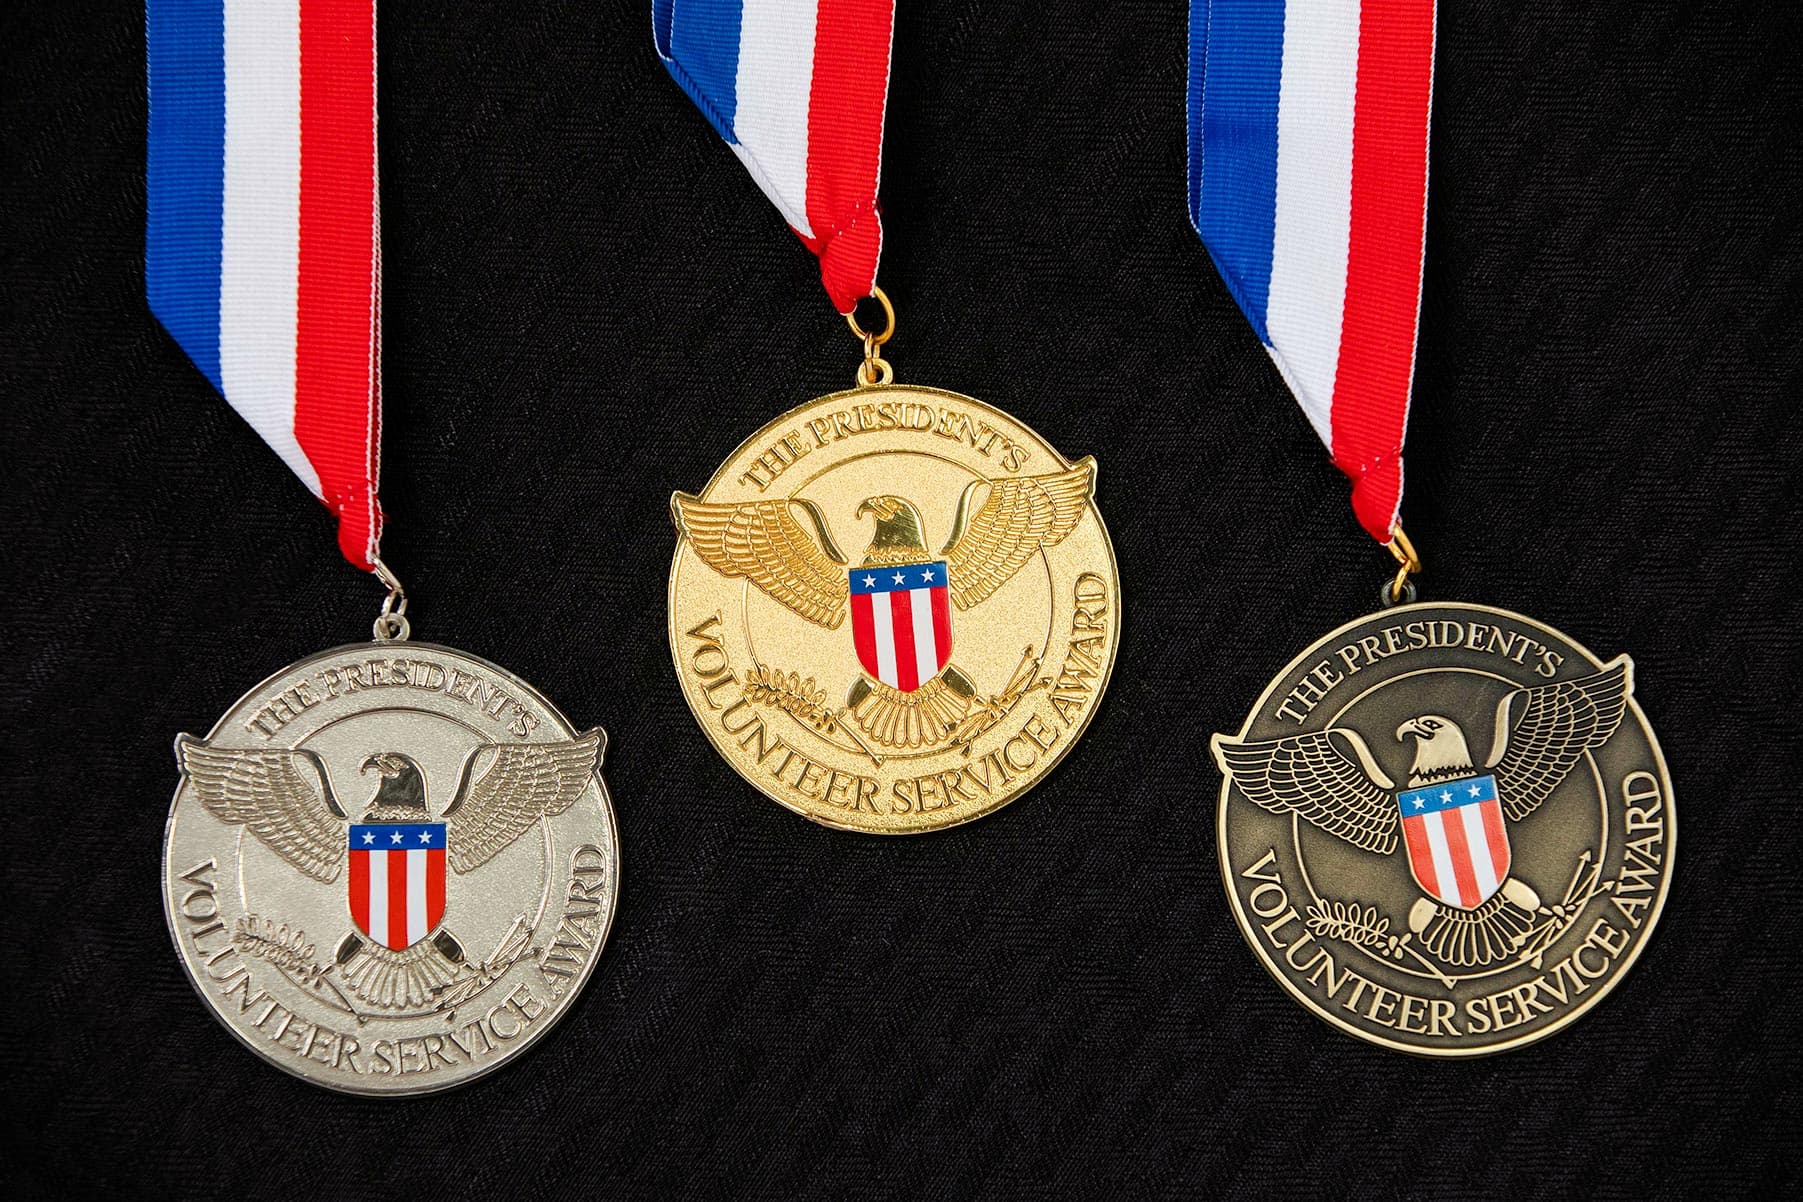 PVSA medals